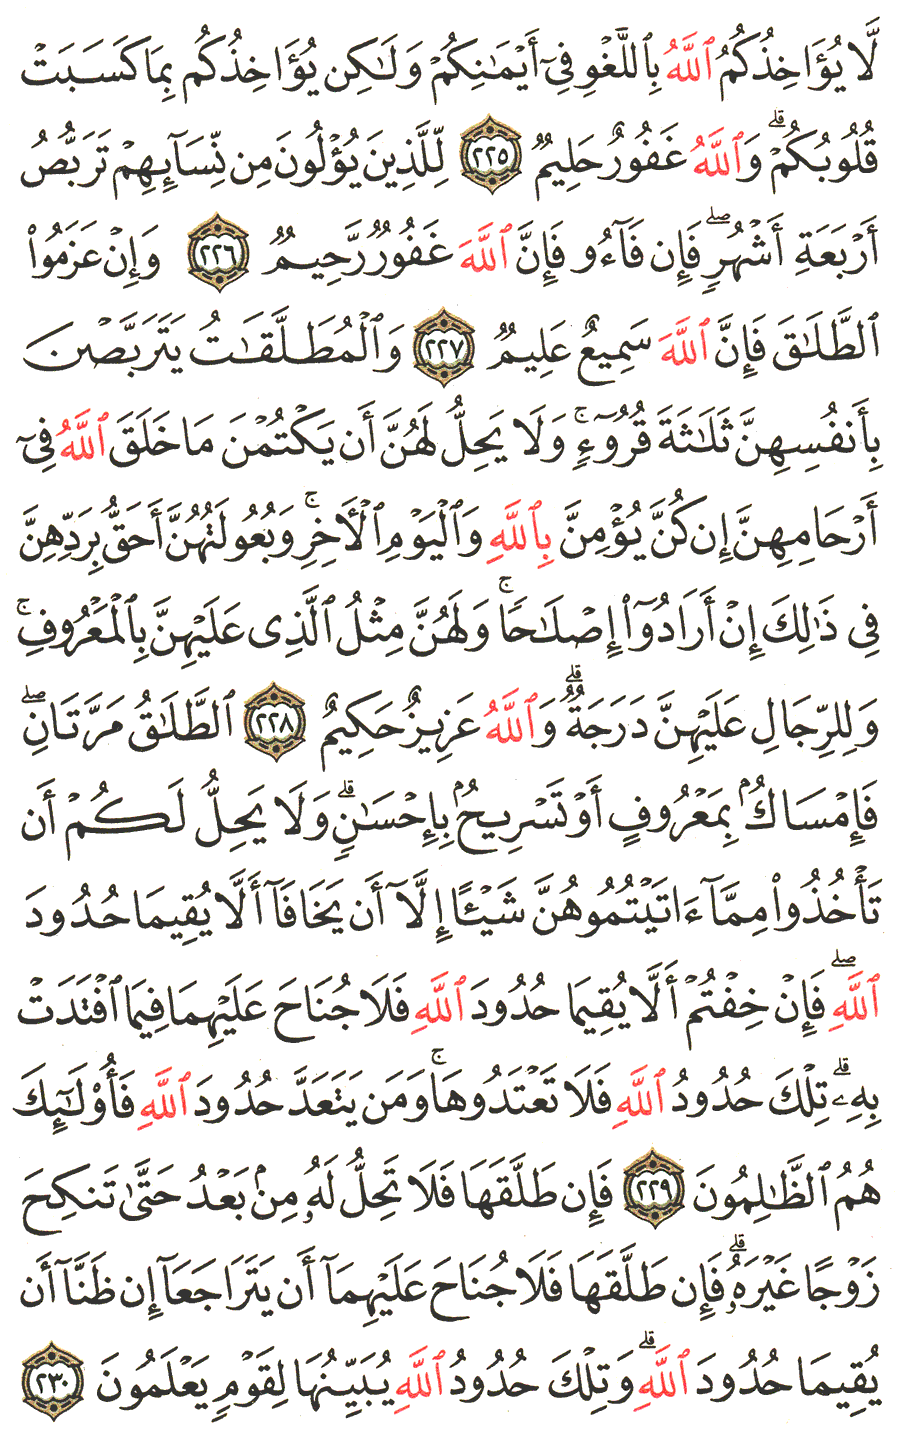 الصفحة 36 من القرآن الكريم